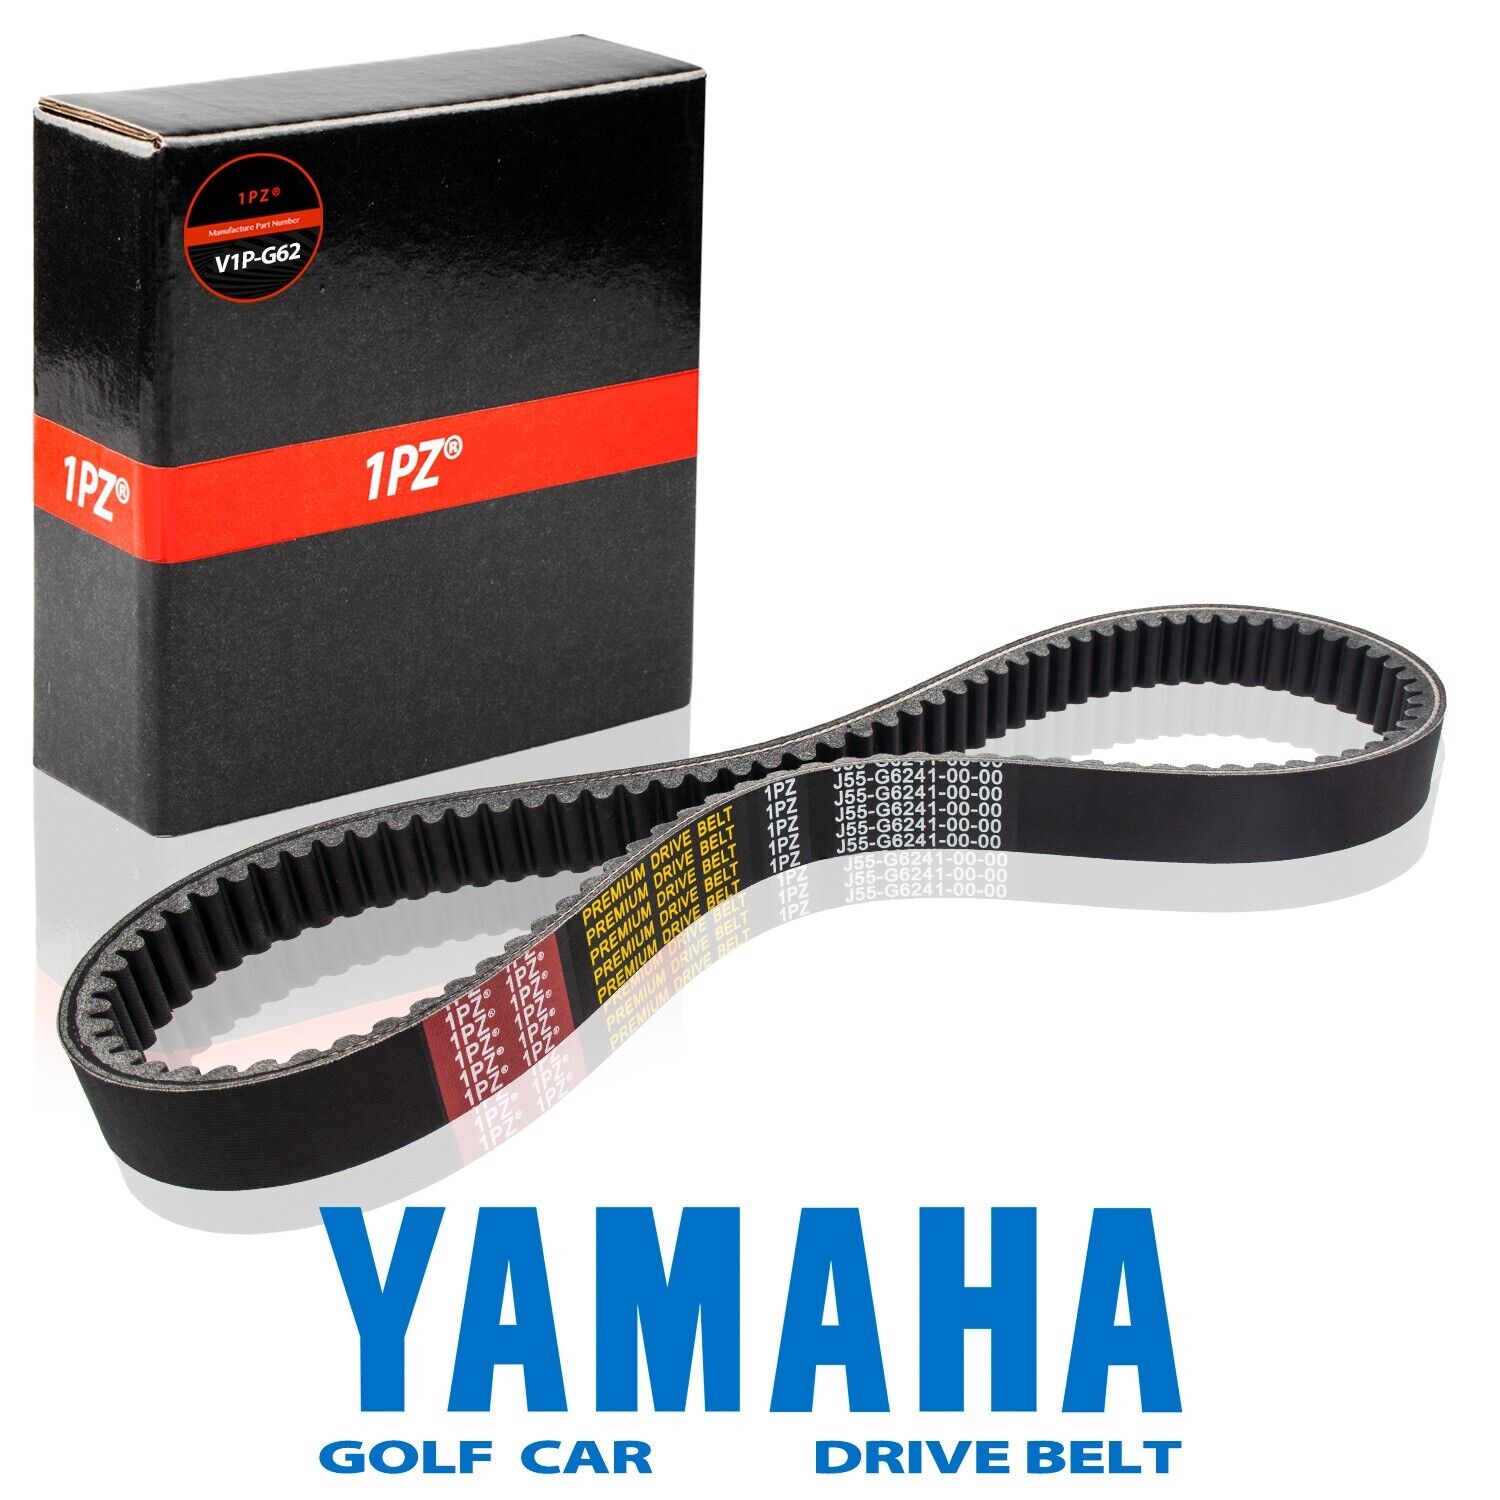 OEM Yamaha Golf Cart Clutch Drive Belt G2 G8 G9 G11 G14 G16 G21 G22 G23 G27 G28